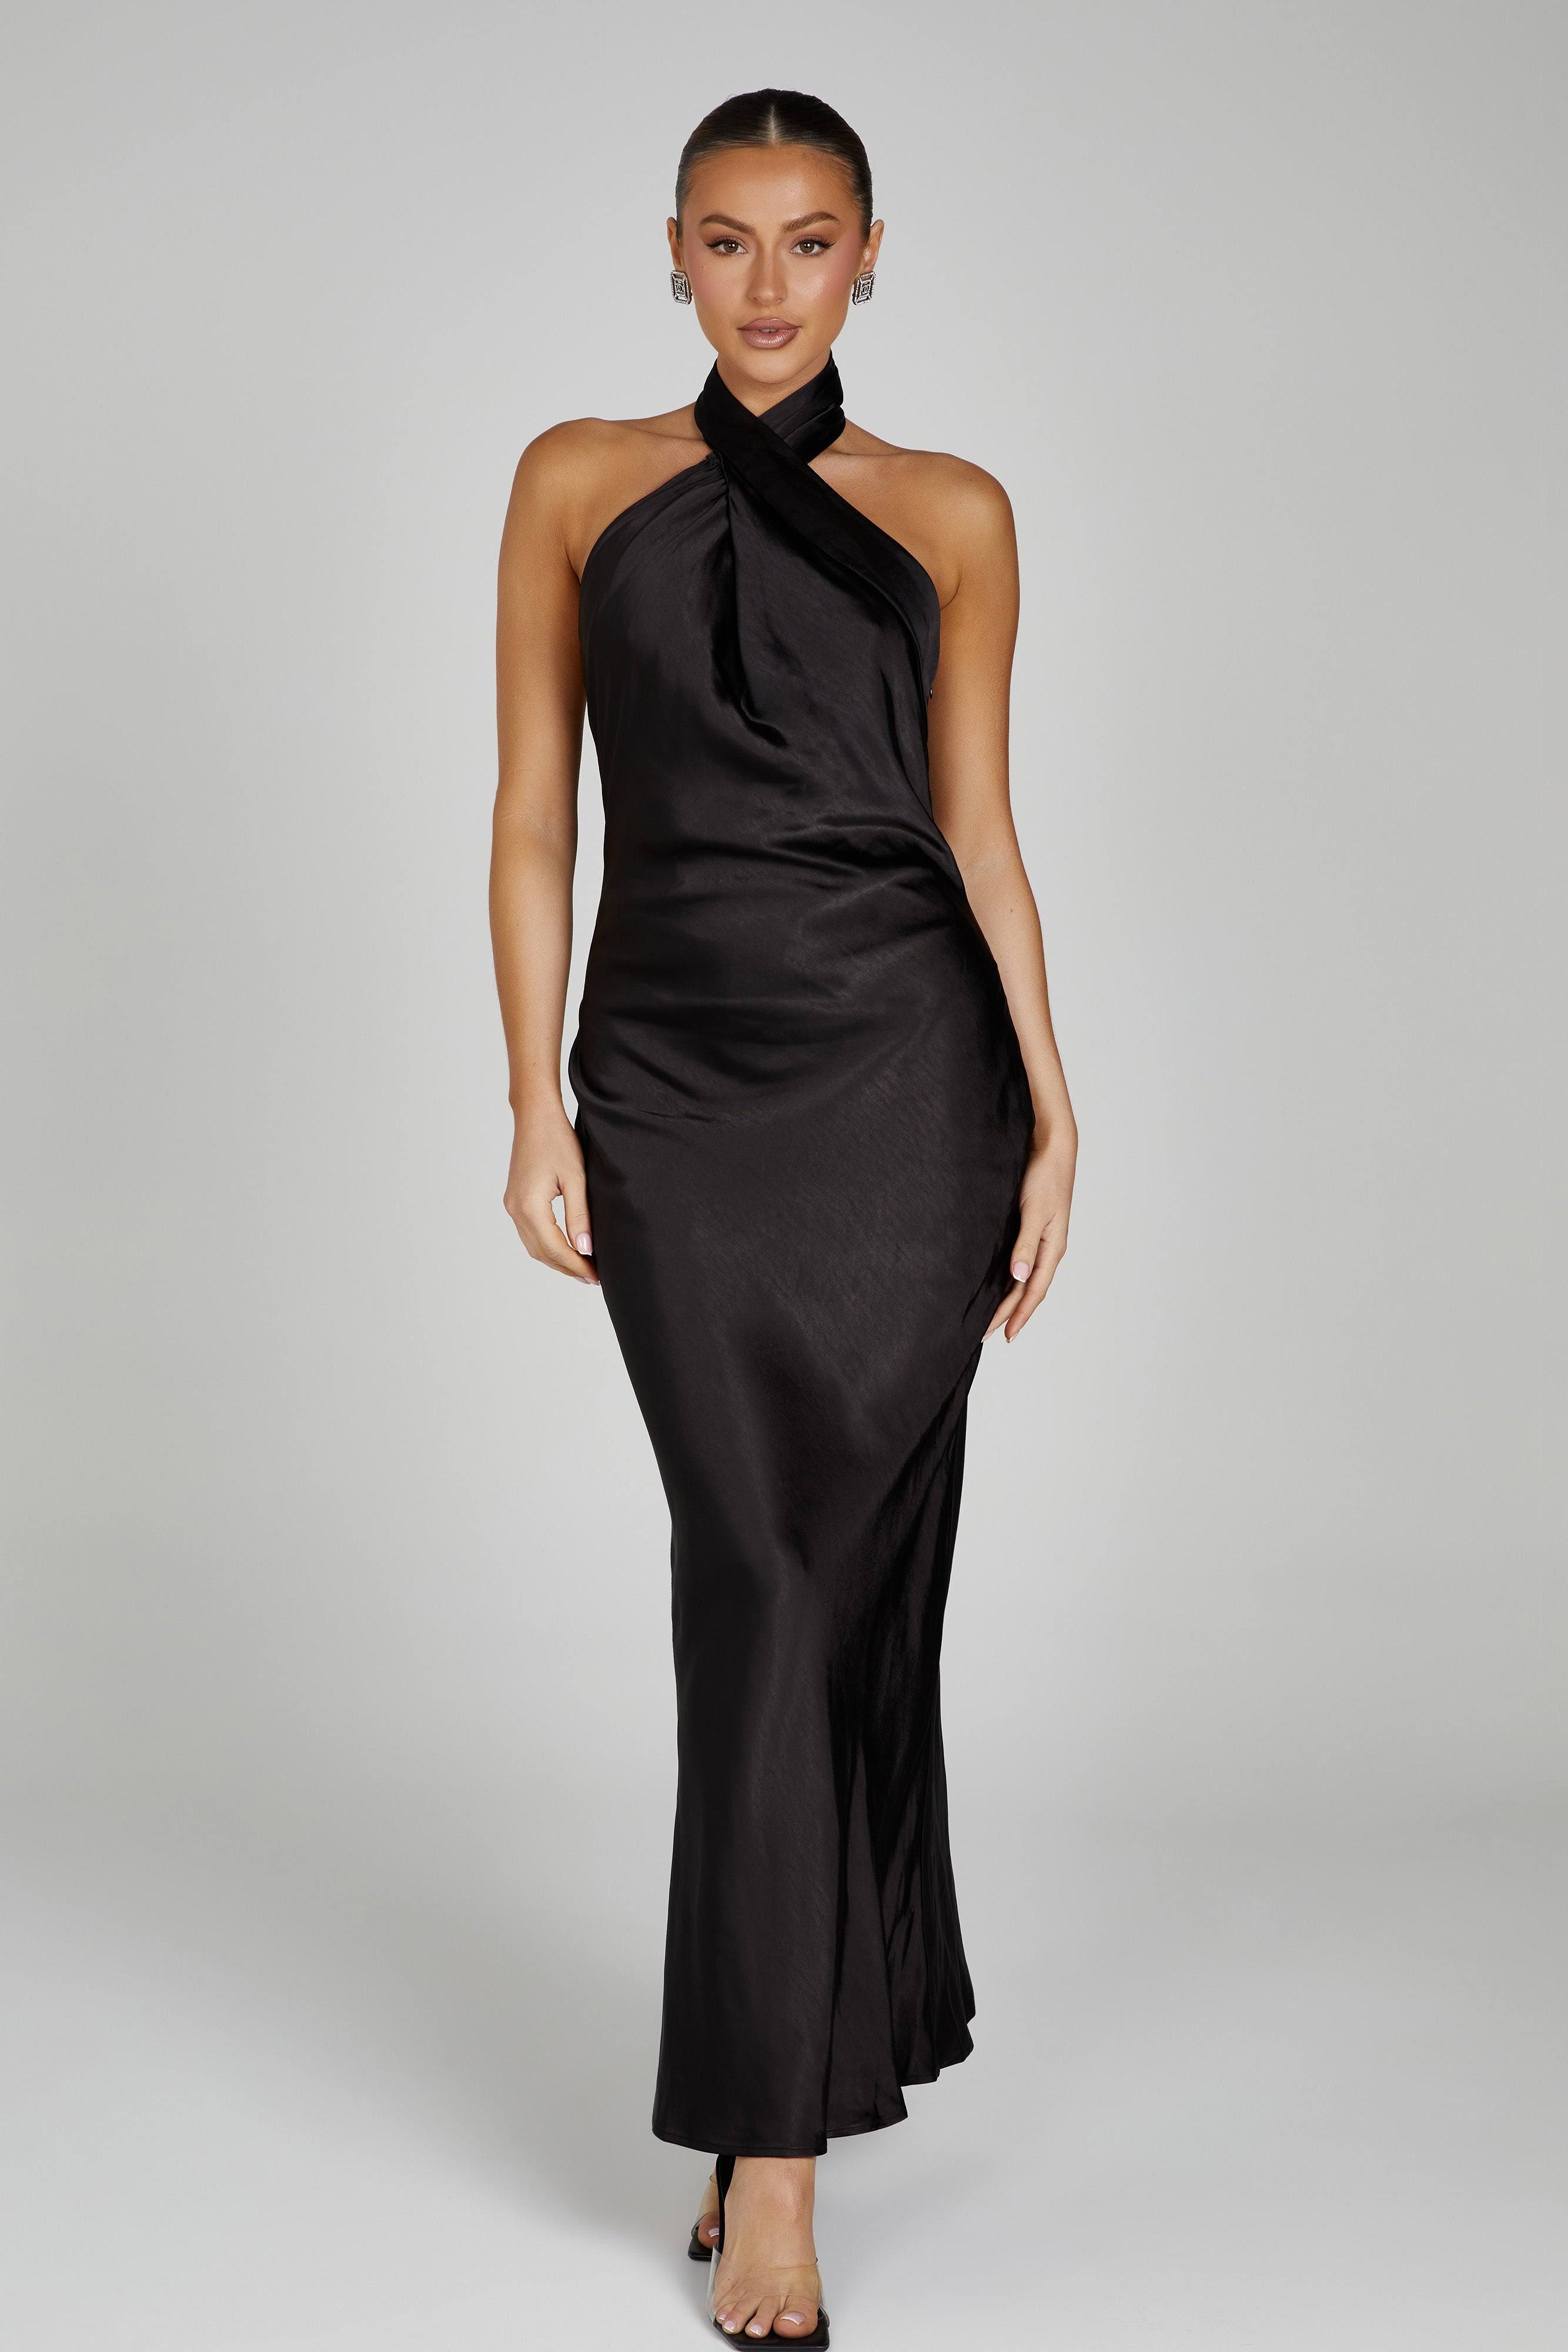 Black Halter Gown with Twist Neckline - XXL | Image